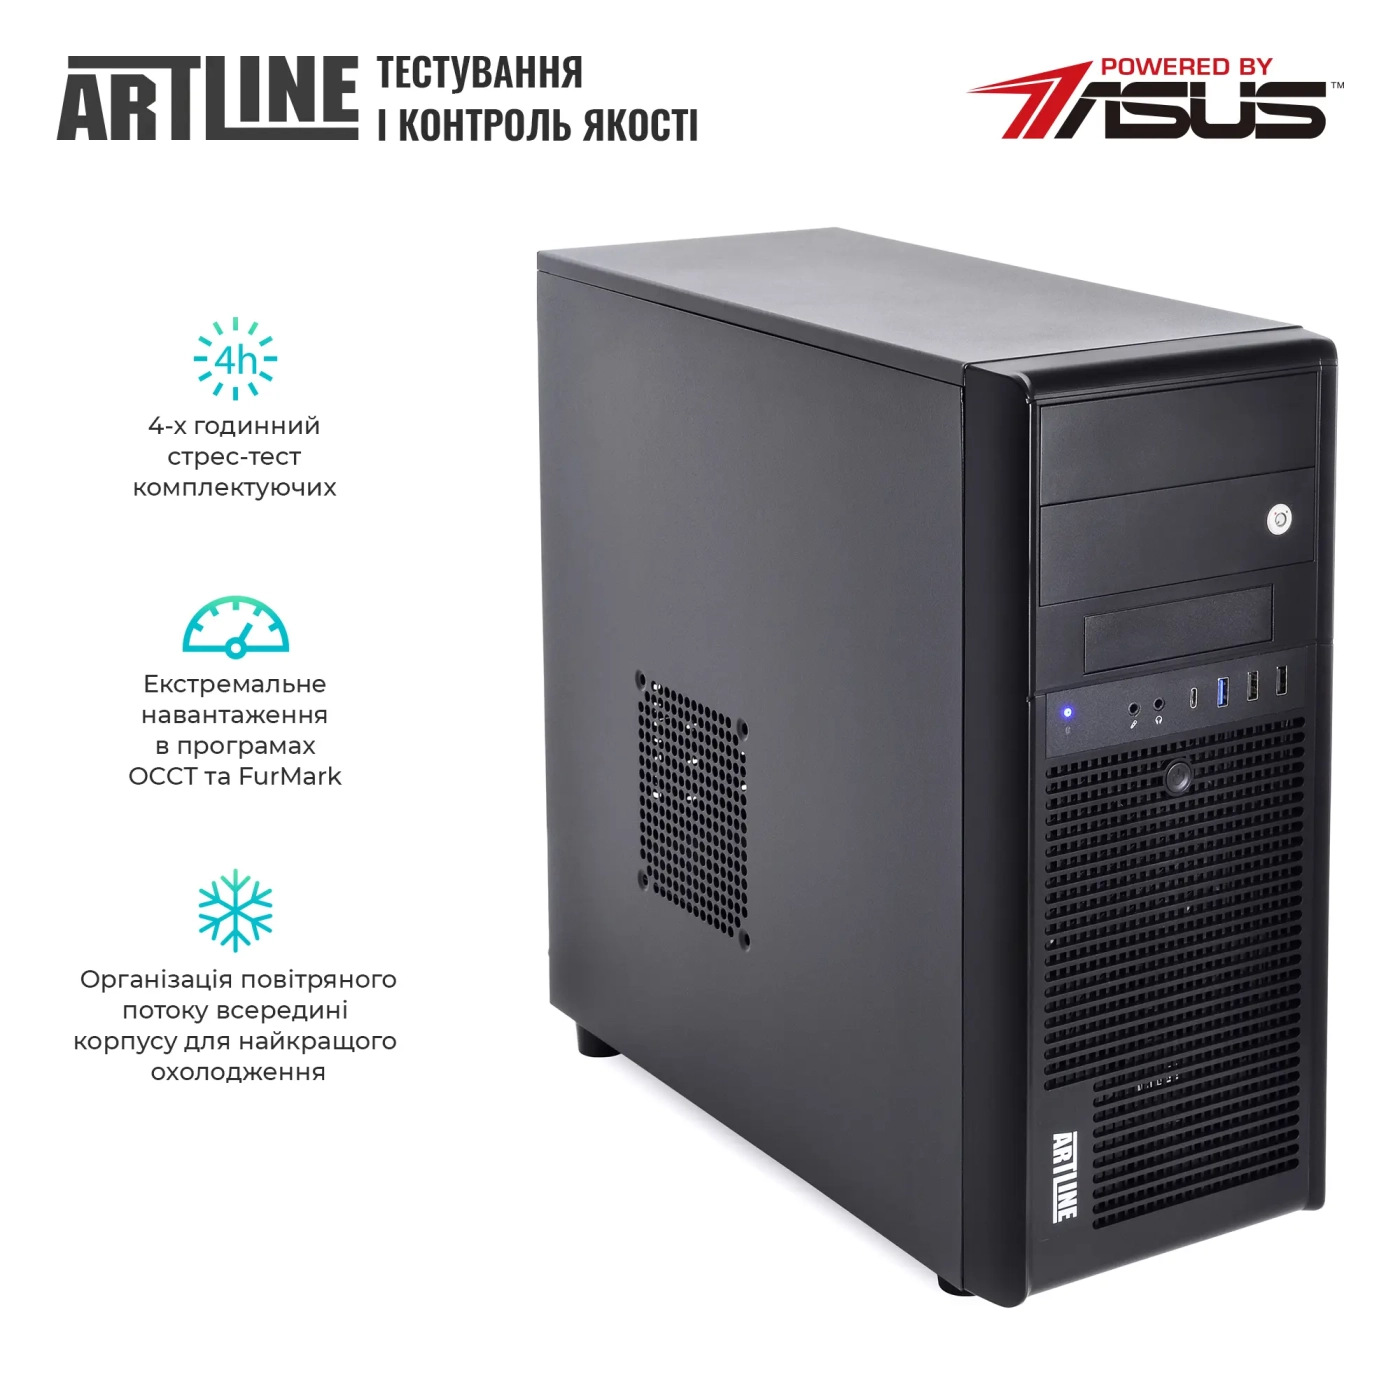 Купить Сервер ARTLINE Business T37 (T37v44) - фото 7